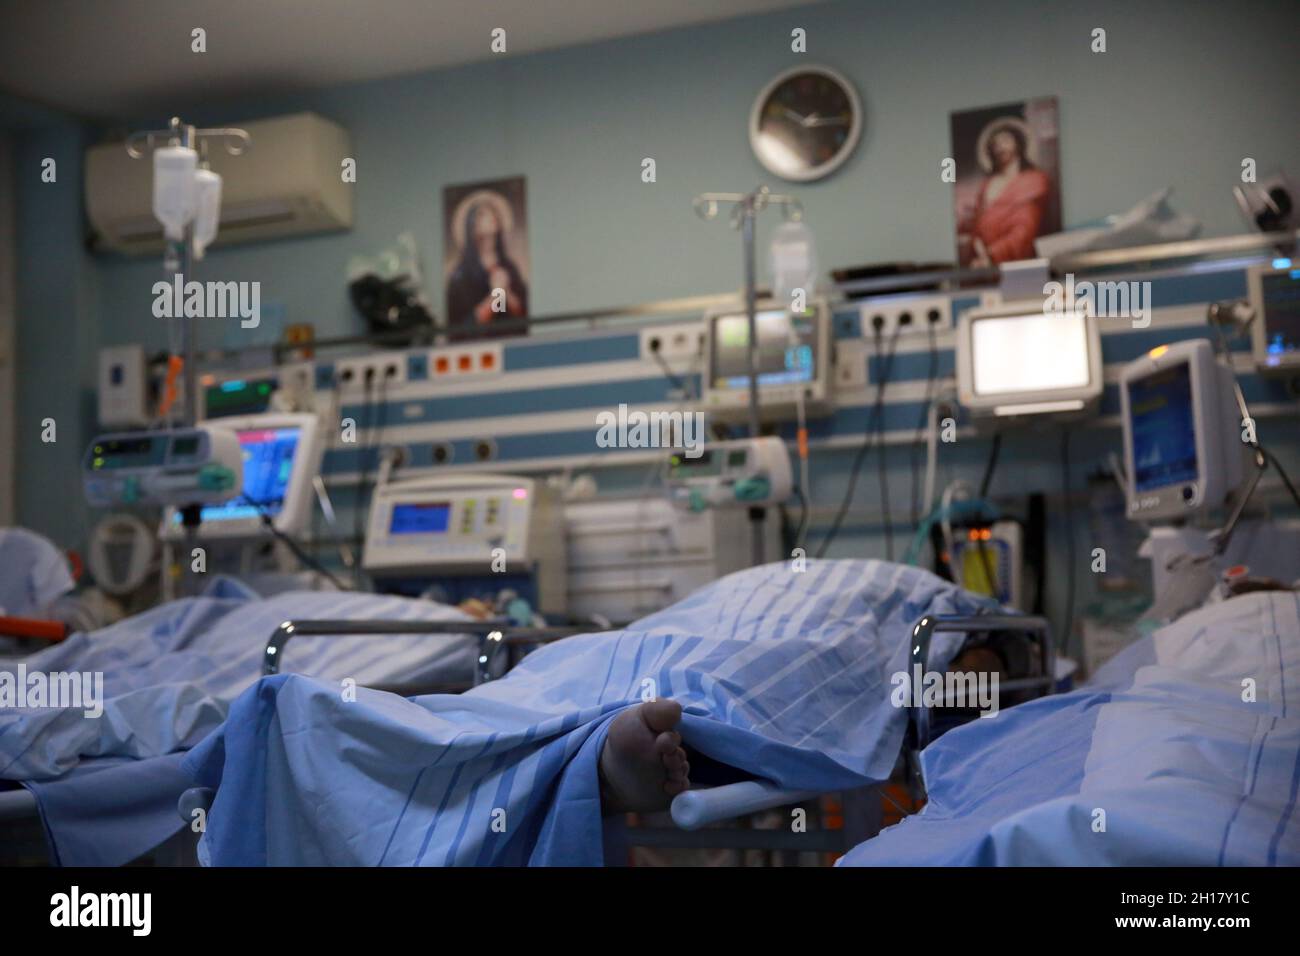 BUKAREST, RUMÄNIEN - 15. Oktober 2021: Intubierte Covid-19-Patienten in der Notaufnahme des Krankenhauses St. Pantelimon, das aufgrund der überfüllten Notaufnahme überfüllt ist Stockfoto